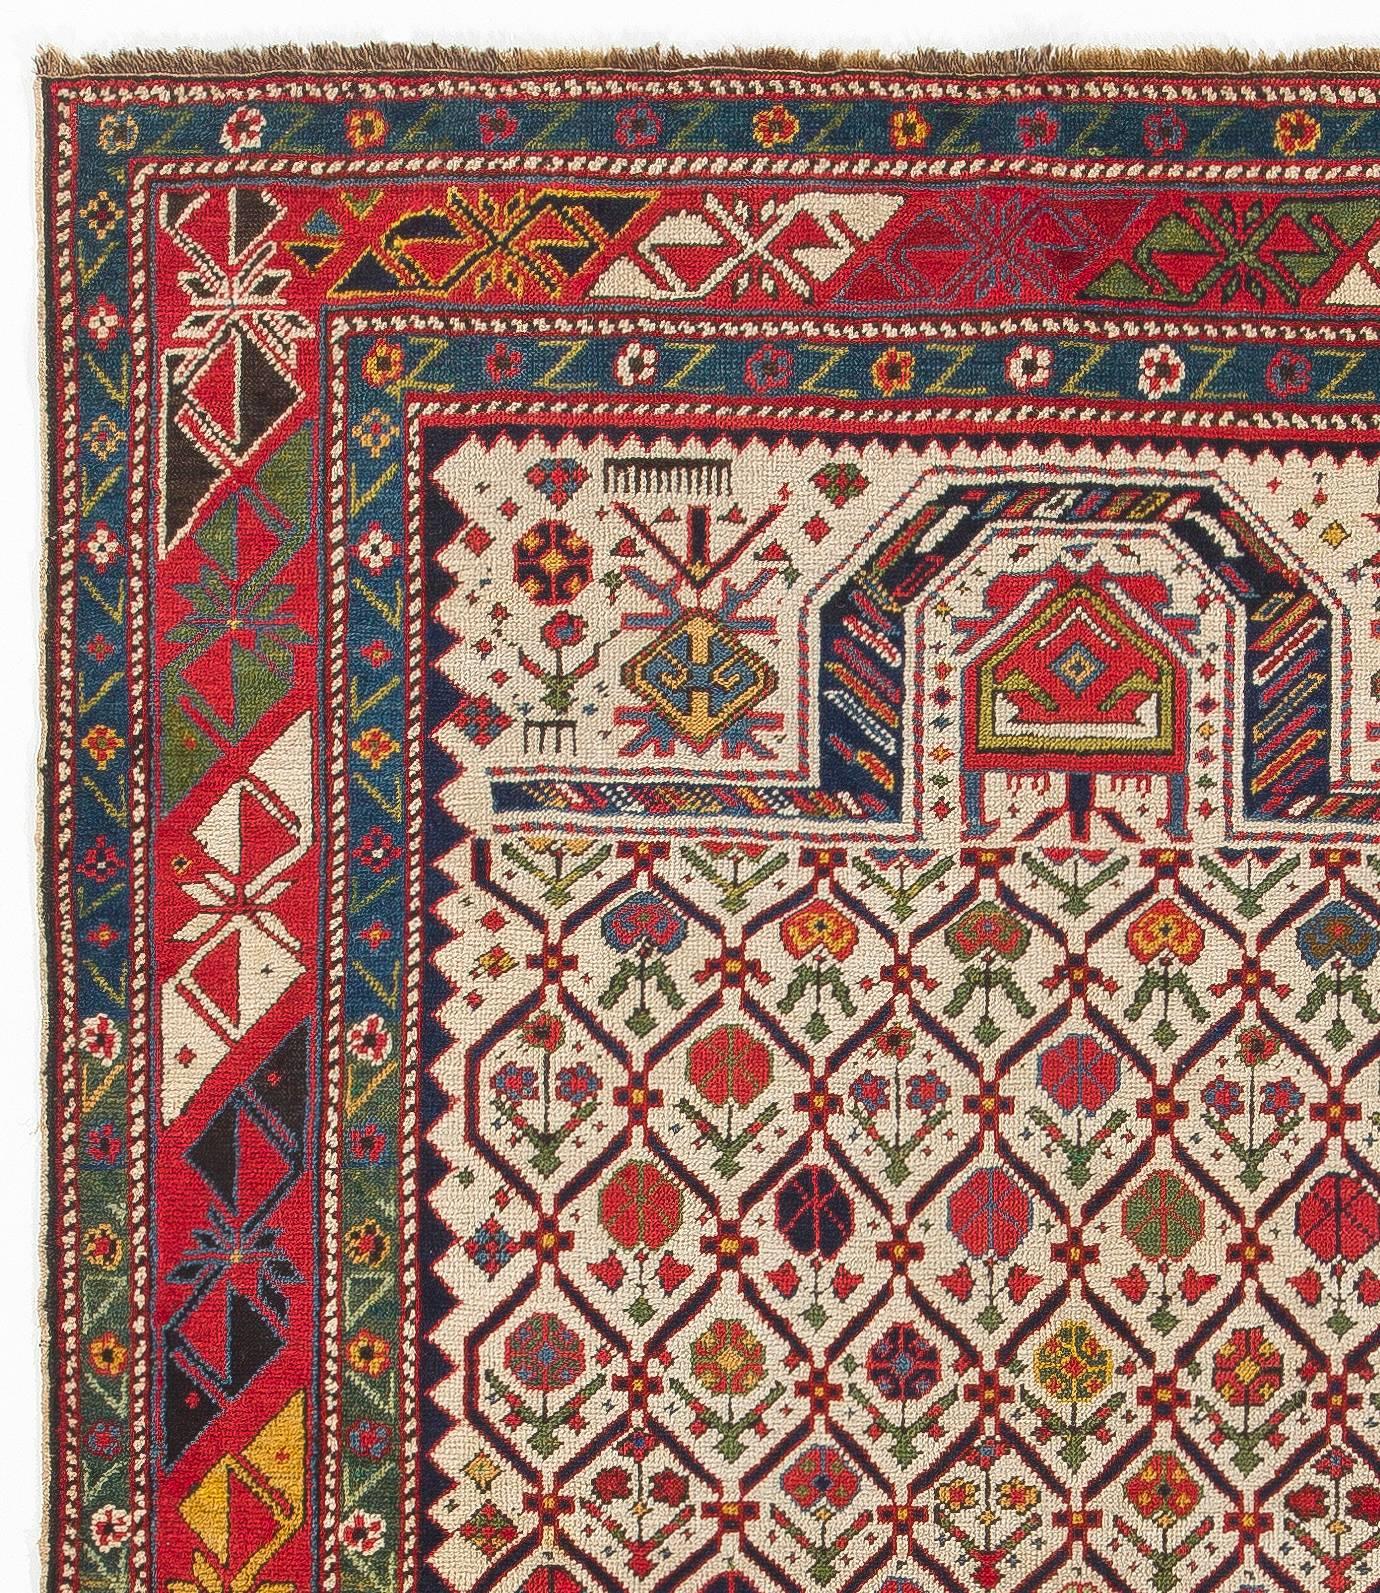 Hand-Woven Antique Caucasian Shirvan Prayer Rug, circa 1850